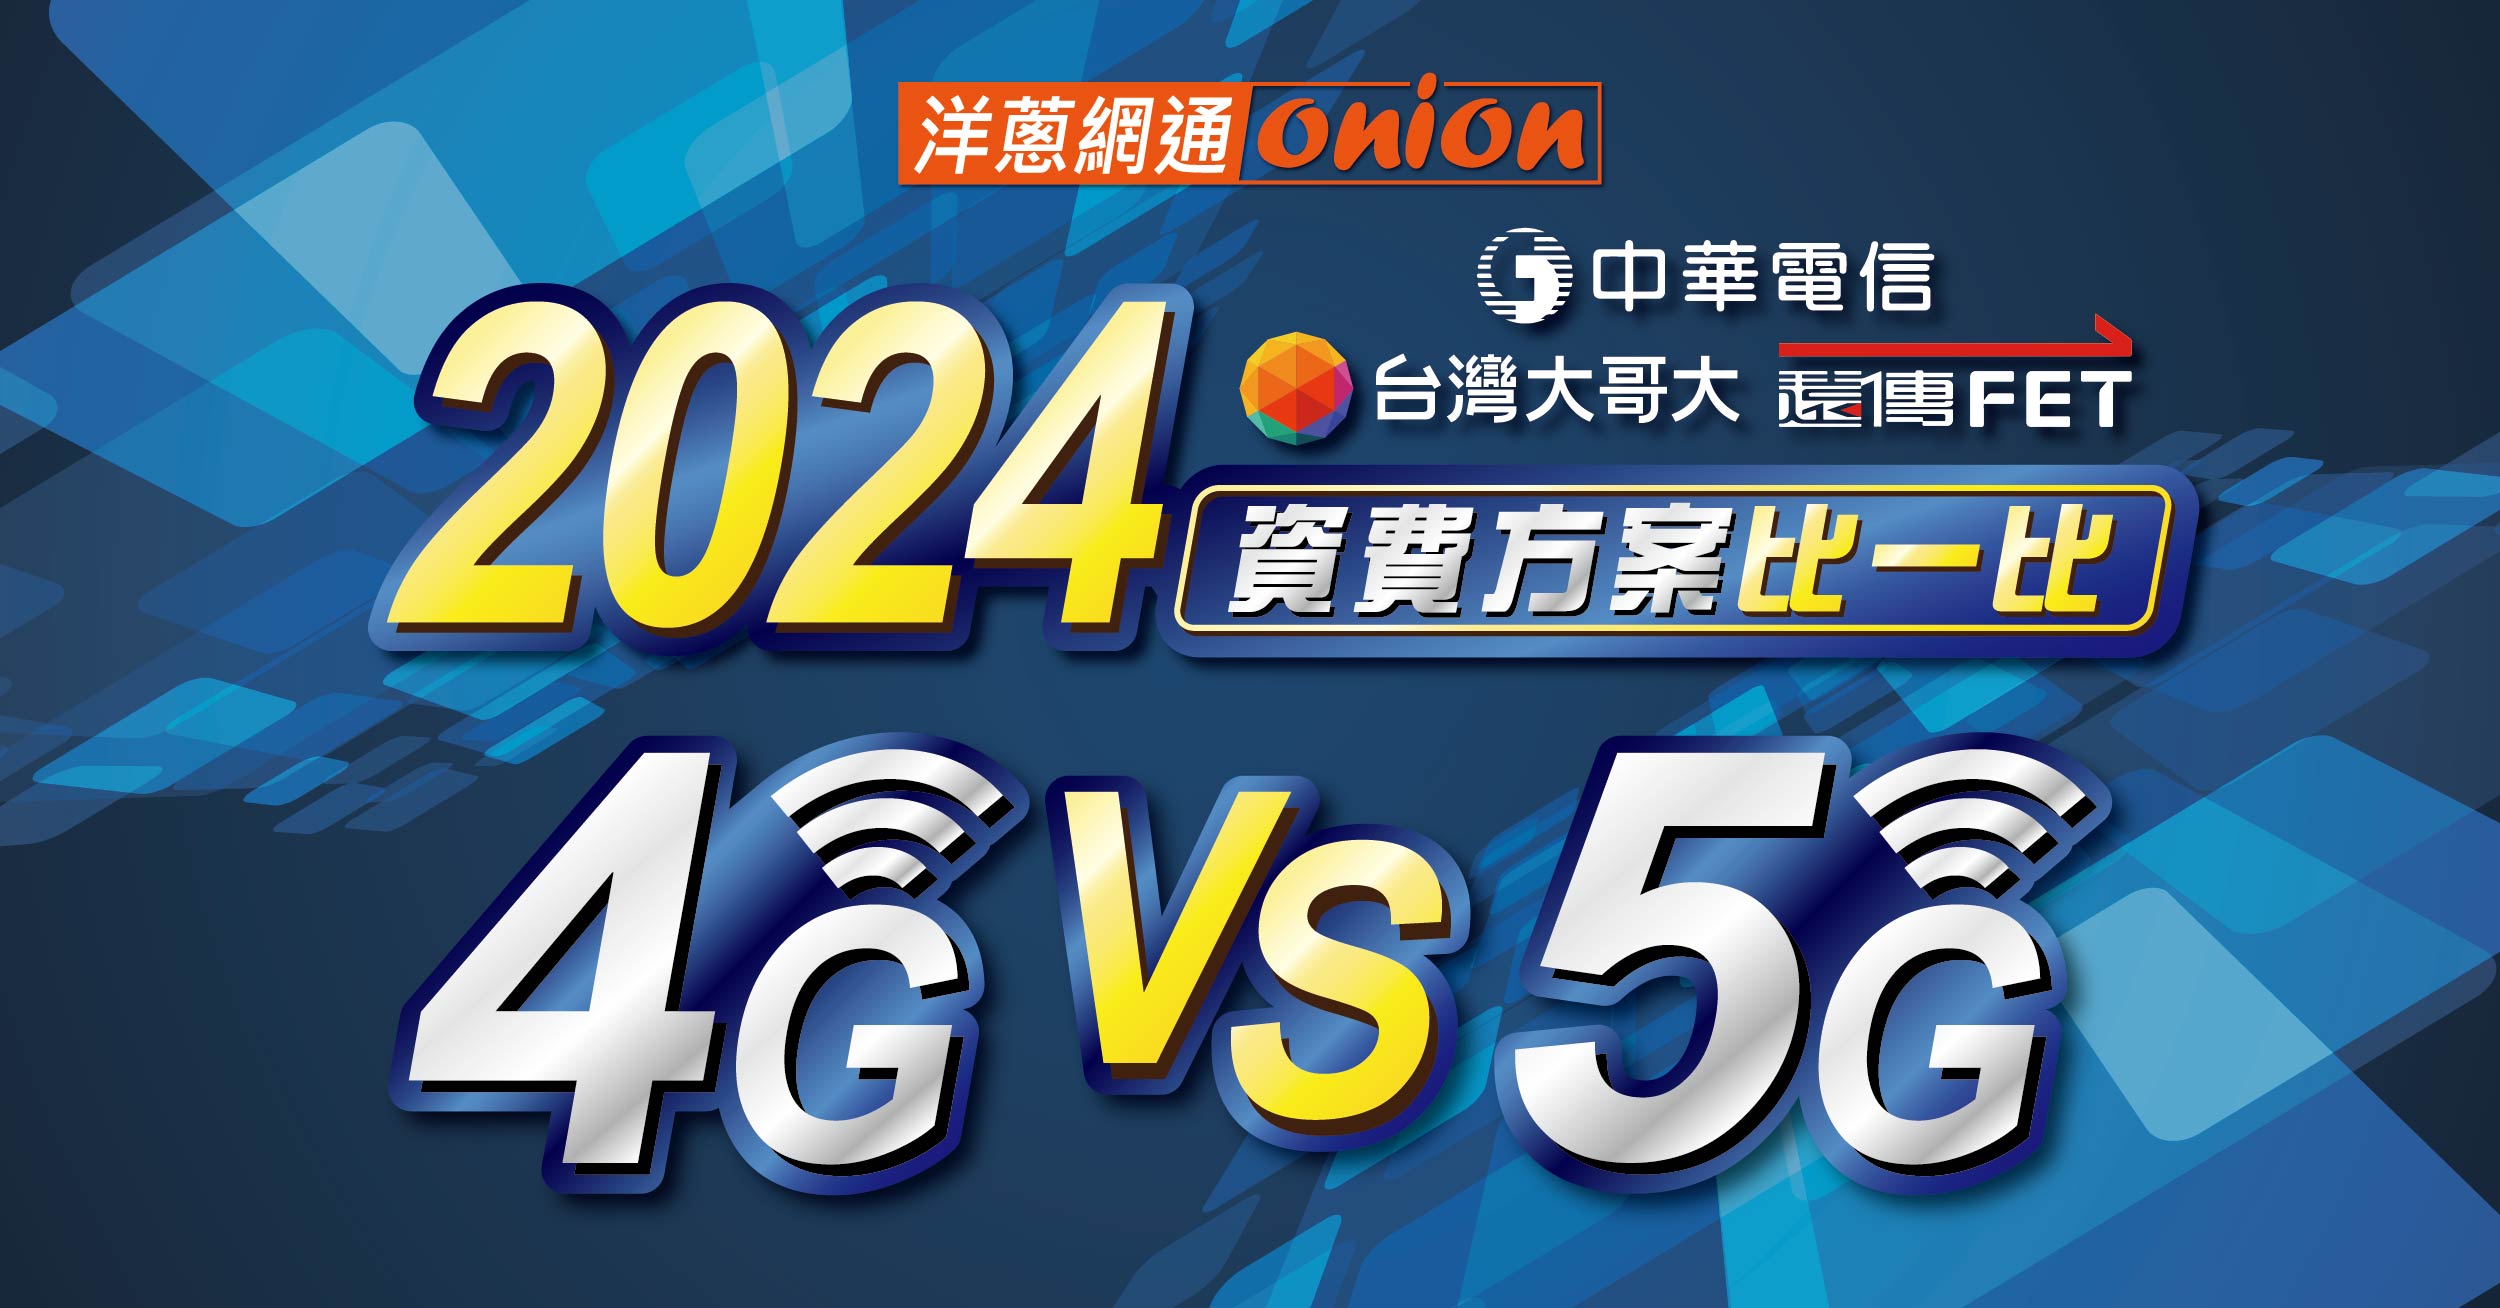 中華電信、遠傳、台哥大資費方案比較，5G出了還要用4G嗎？訊號與費率問題解答